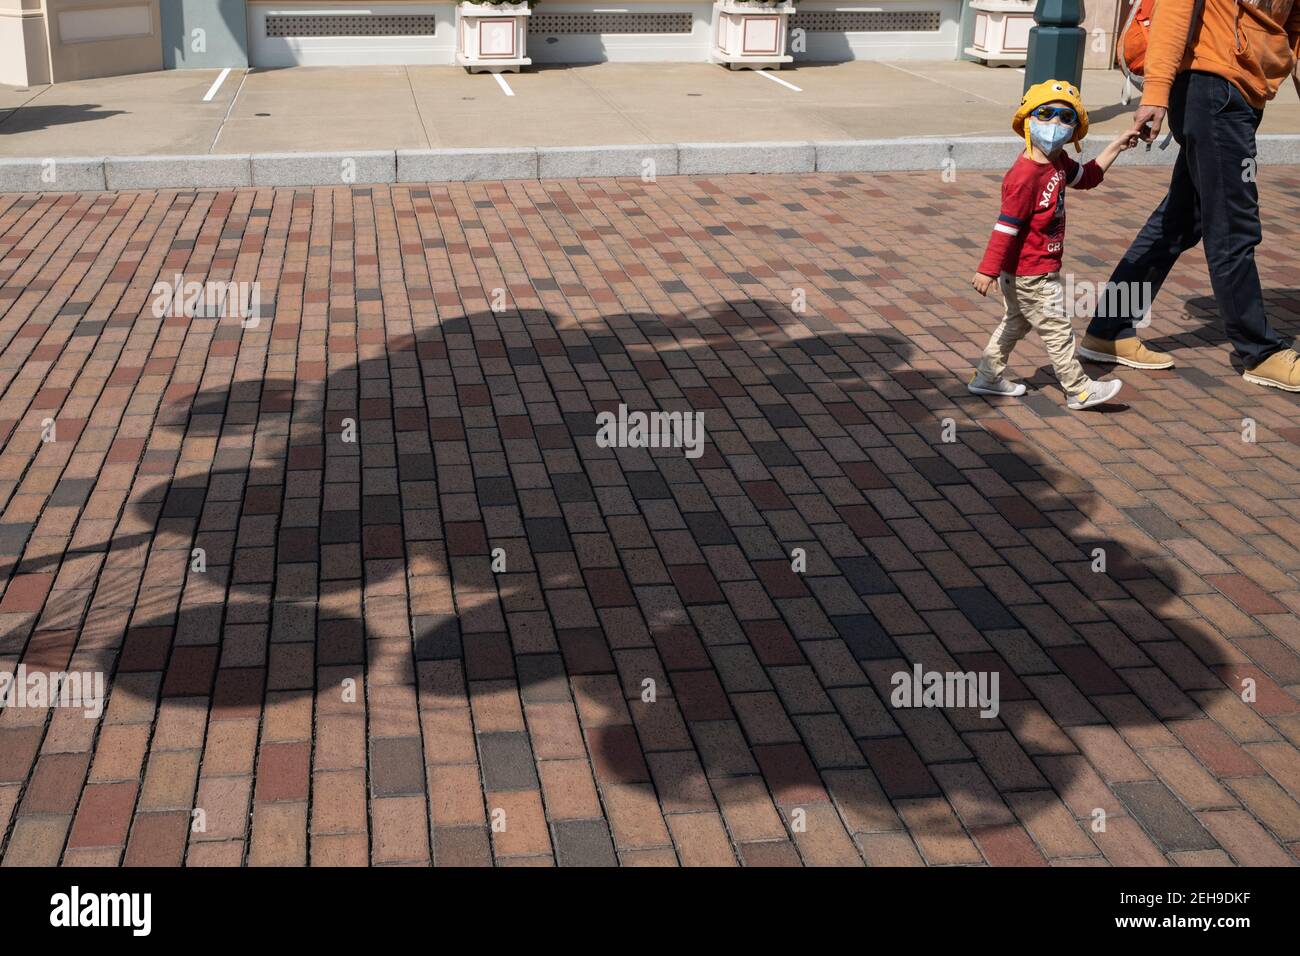 Un enfant marche à travers des ombres de ballons lors de la réouverture du parc Disneyland de Hong Kong alors que le gouvernement perd les mesures de distance sociale du coronavirus (Covid-19). Banque D'Images